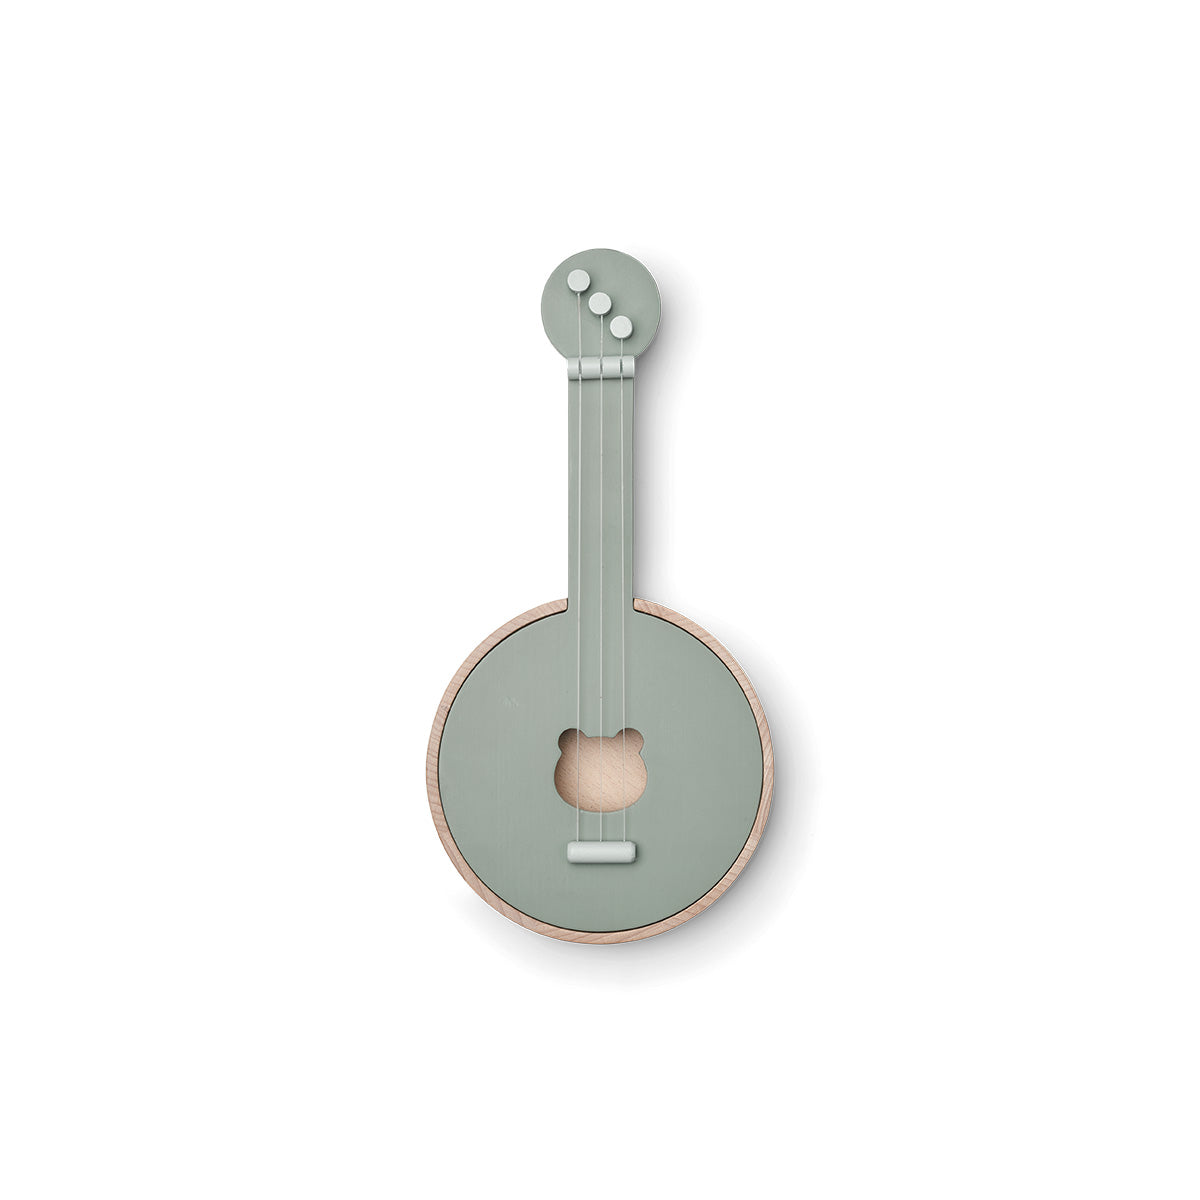 Is jouw kind een echte muzikant? Met de houten banjo chas faune green/dove blue van Liewood kan jouw kindje een echt optreden geven. Deze speelgoedbanjo is een eyecatcher in de kinderkamer of woonkamer. VanZus 